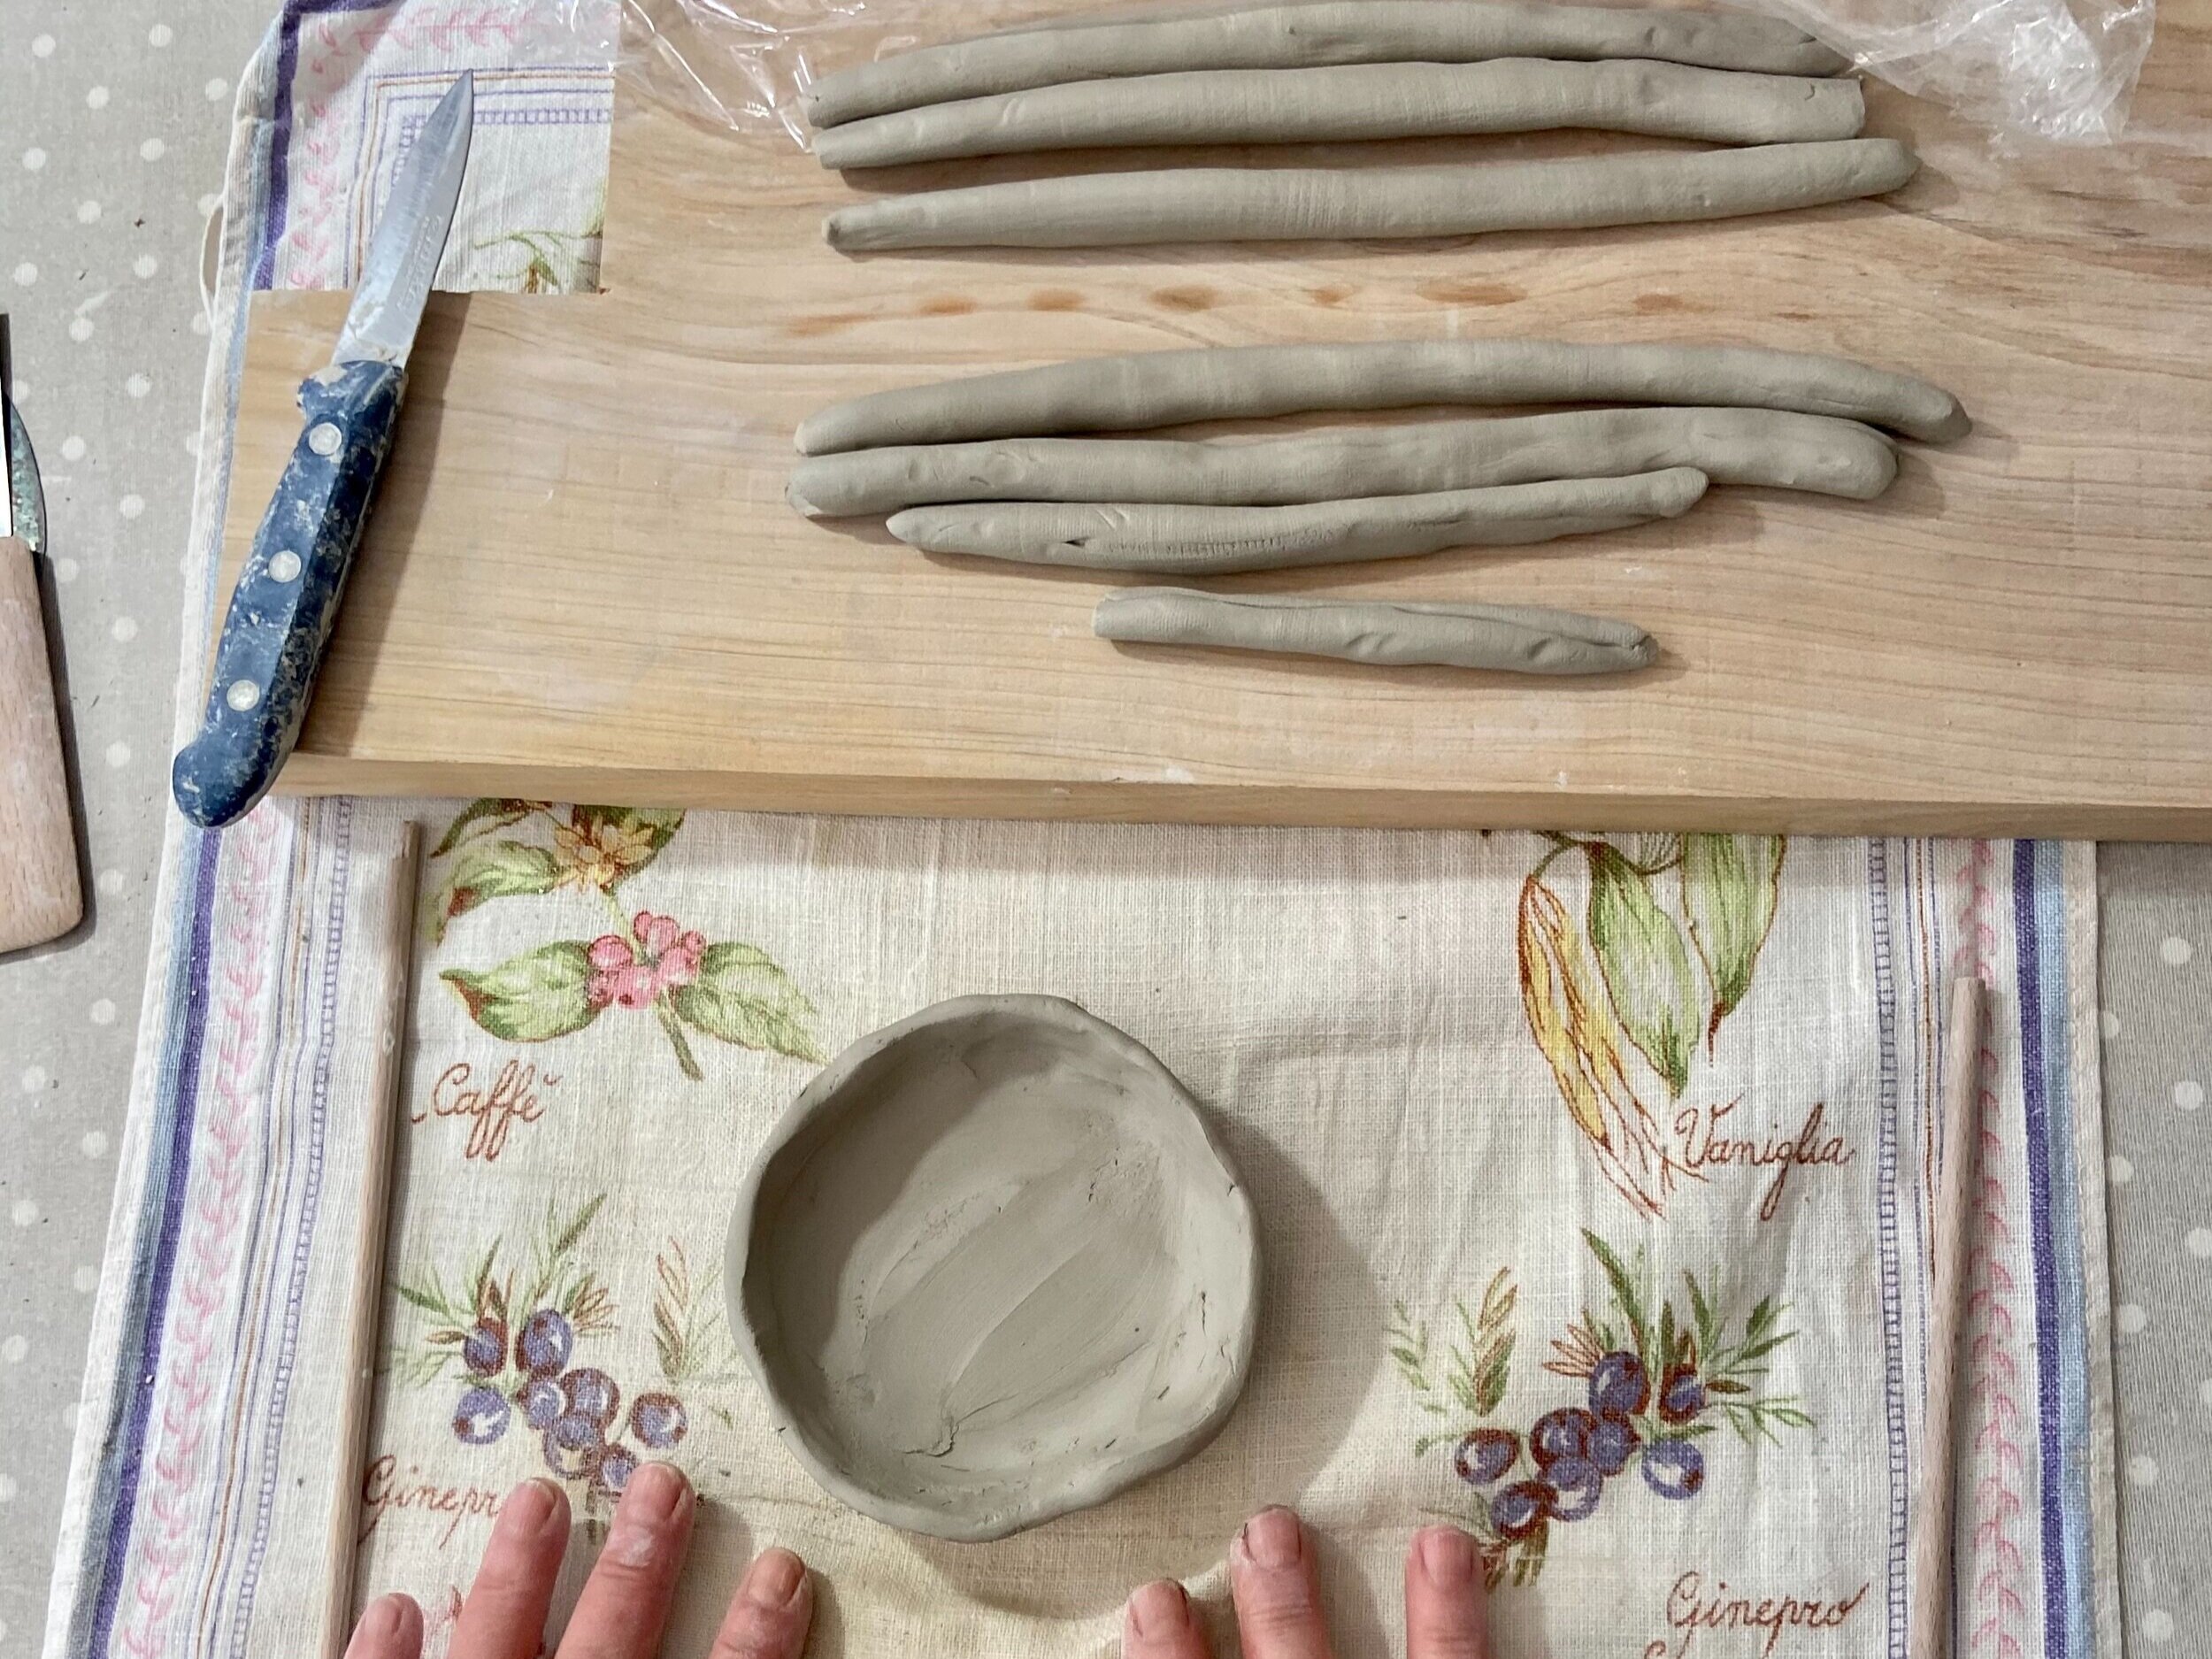 Técnica de los churros para modelar barro en cerámica — Majolina Ceramics